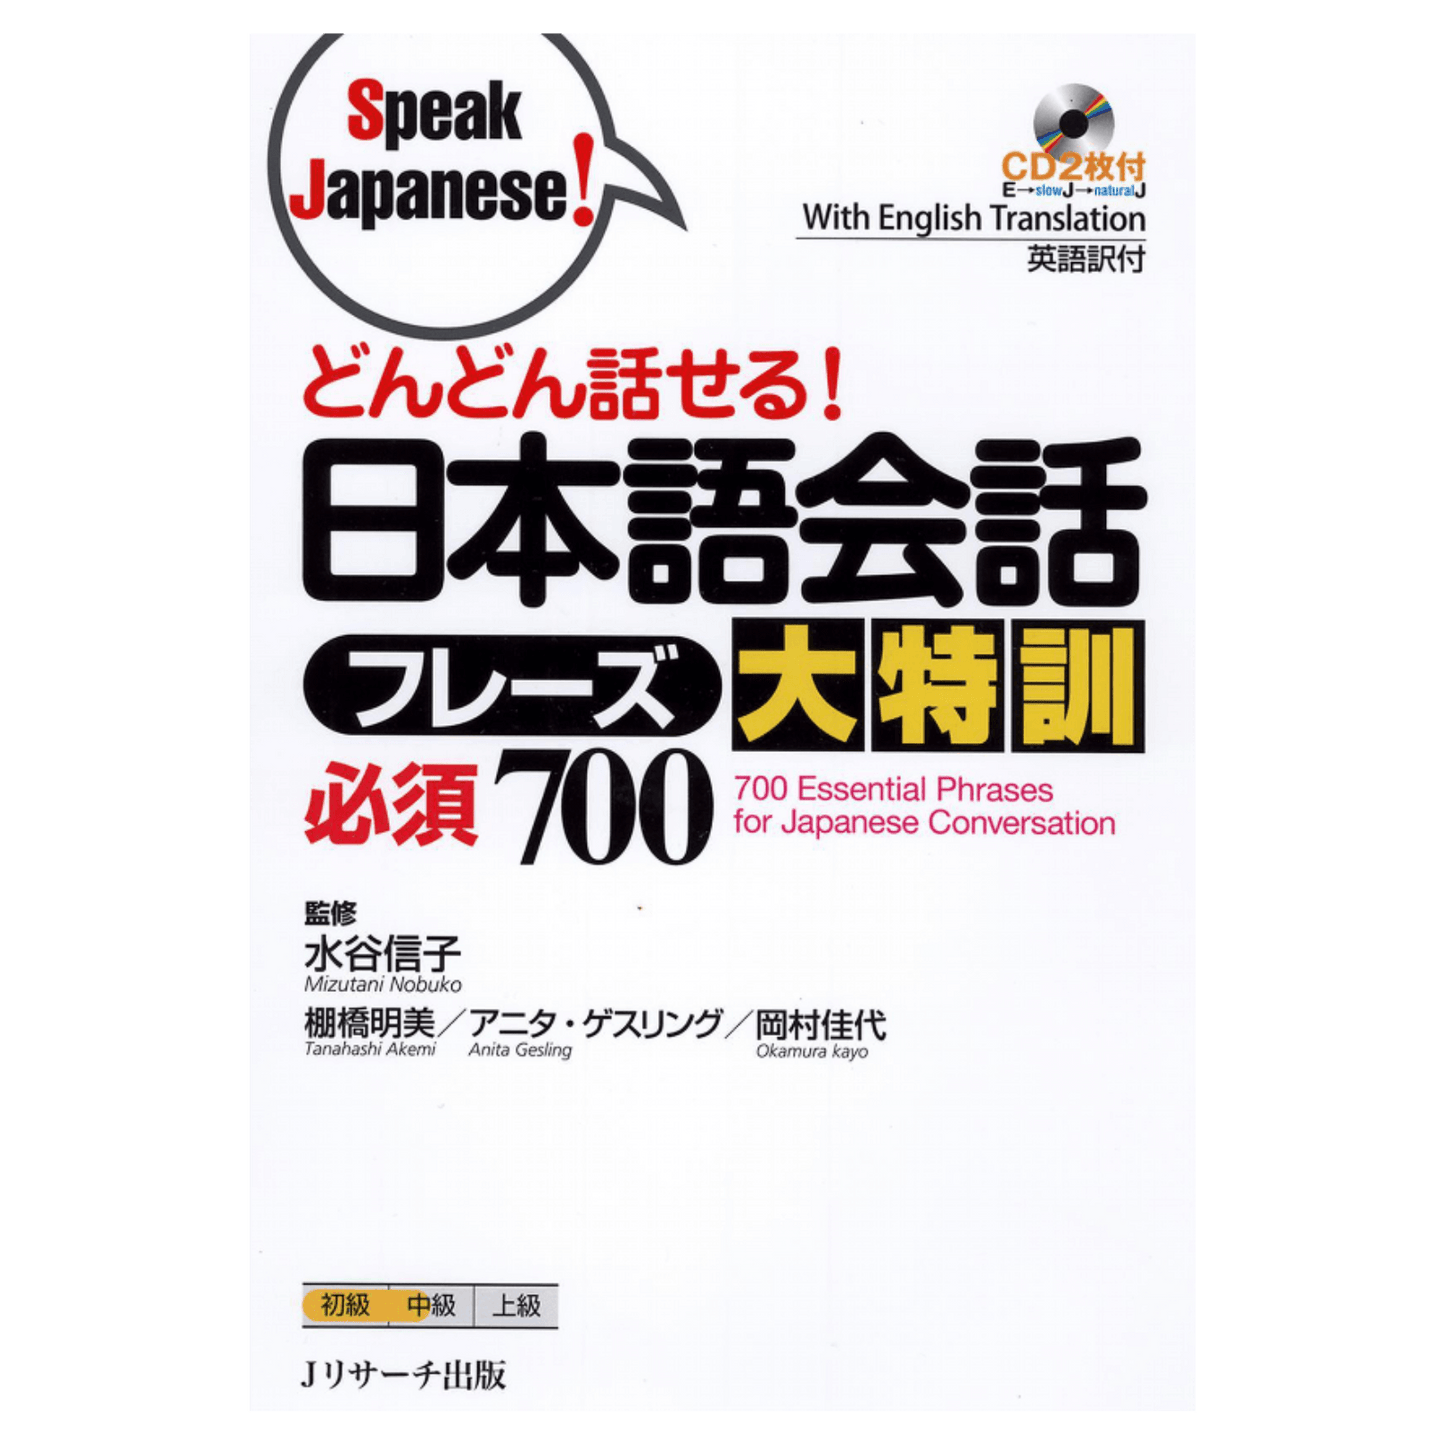 Japanisches Handbuch | Japanisch sprechen! -どんどん話せる! ChitoroShop